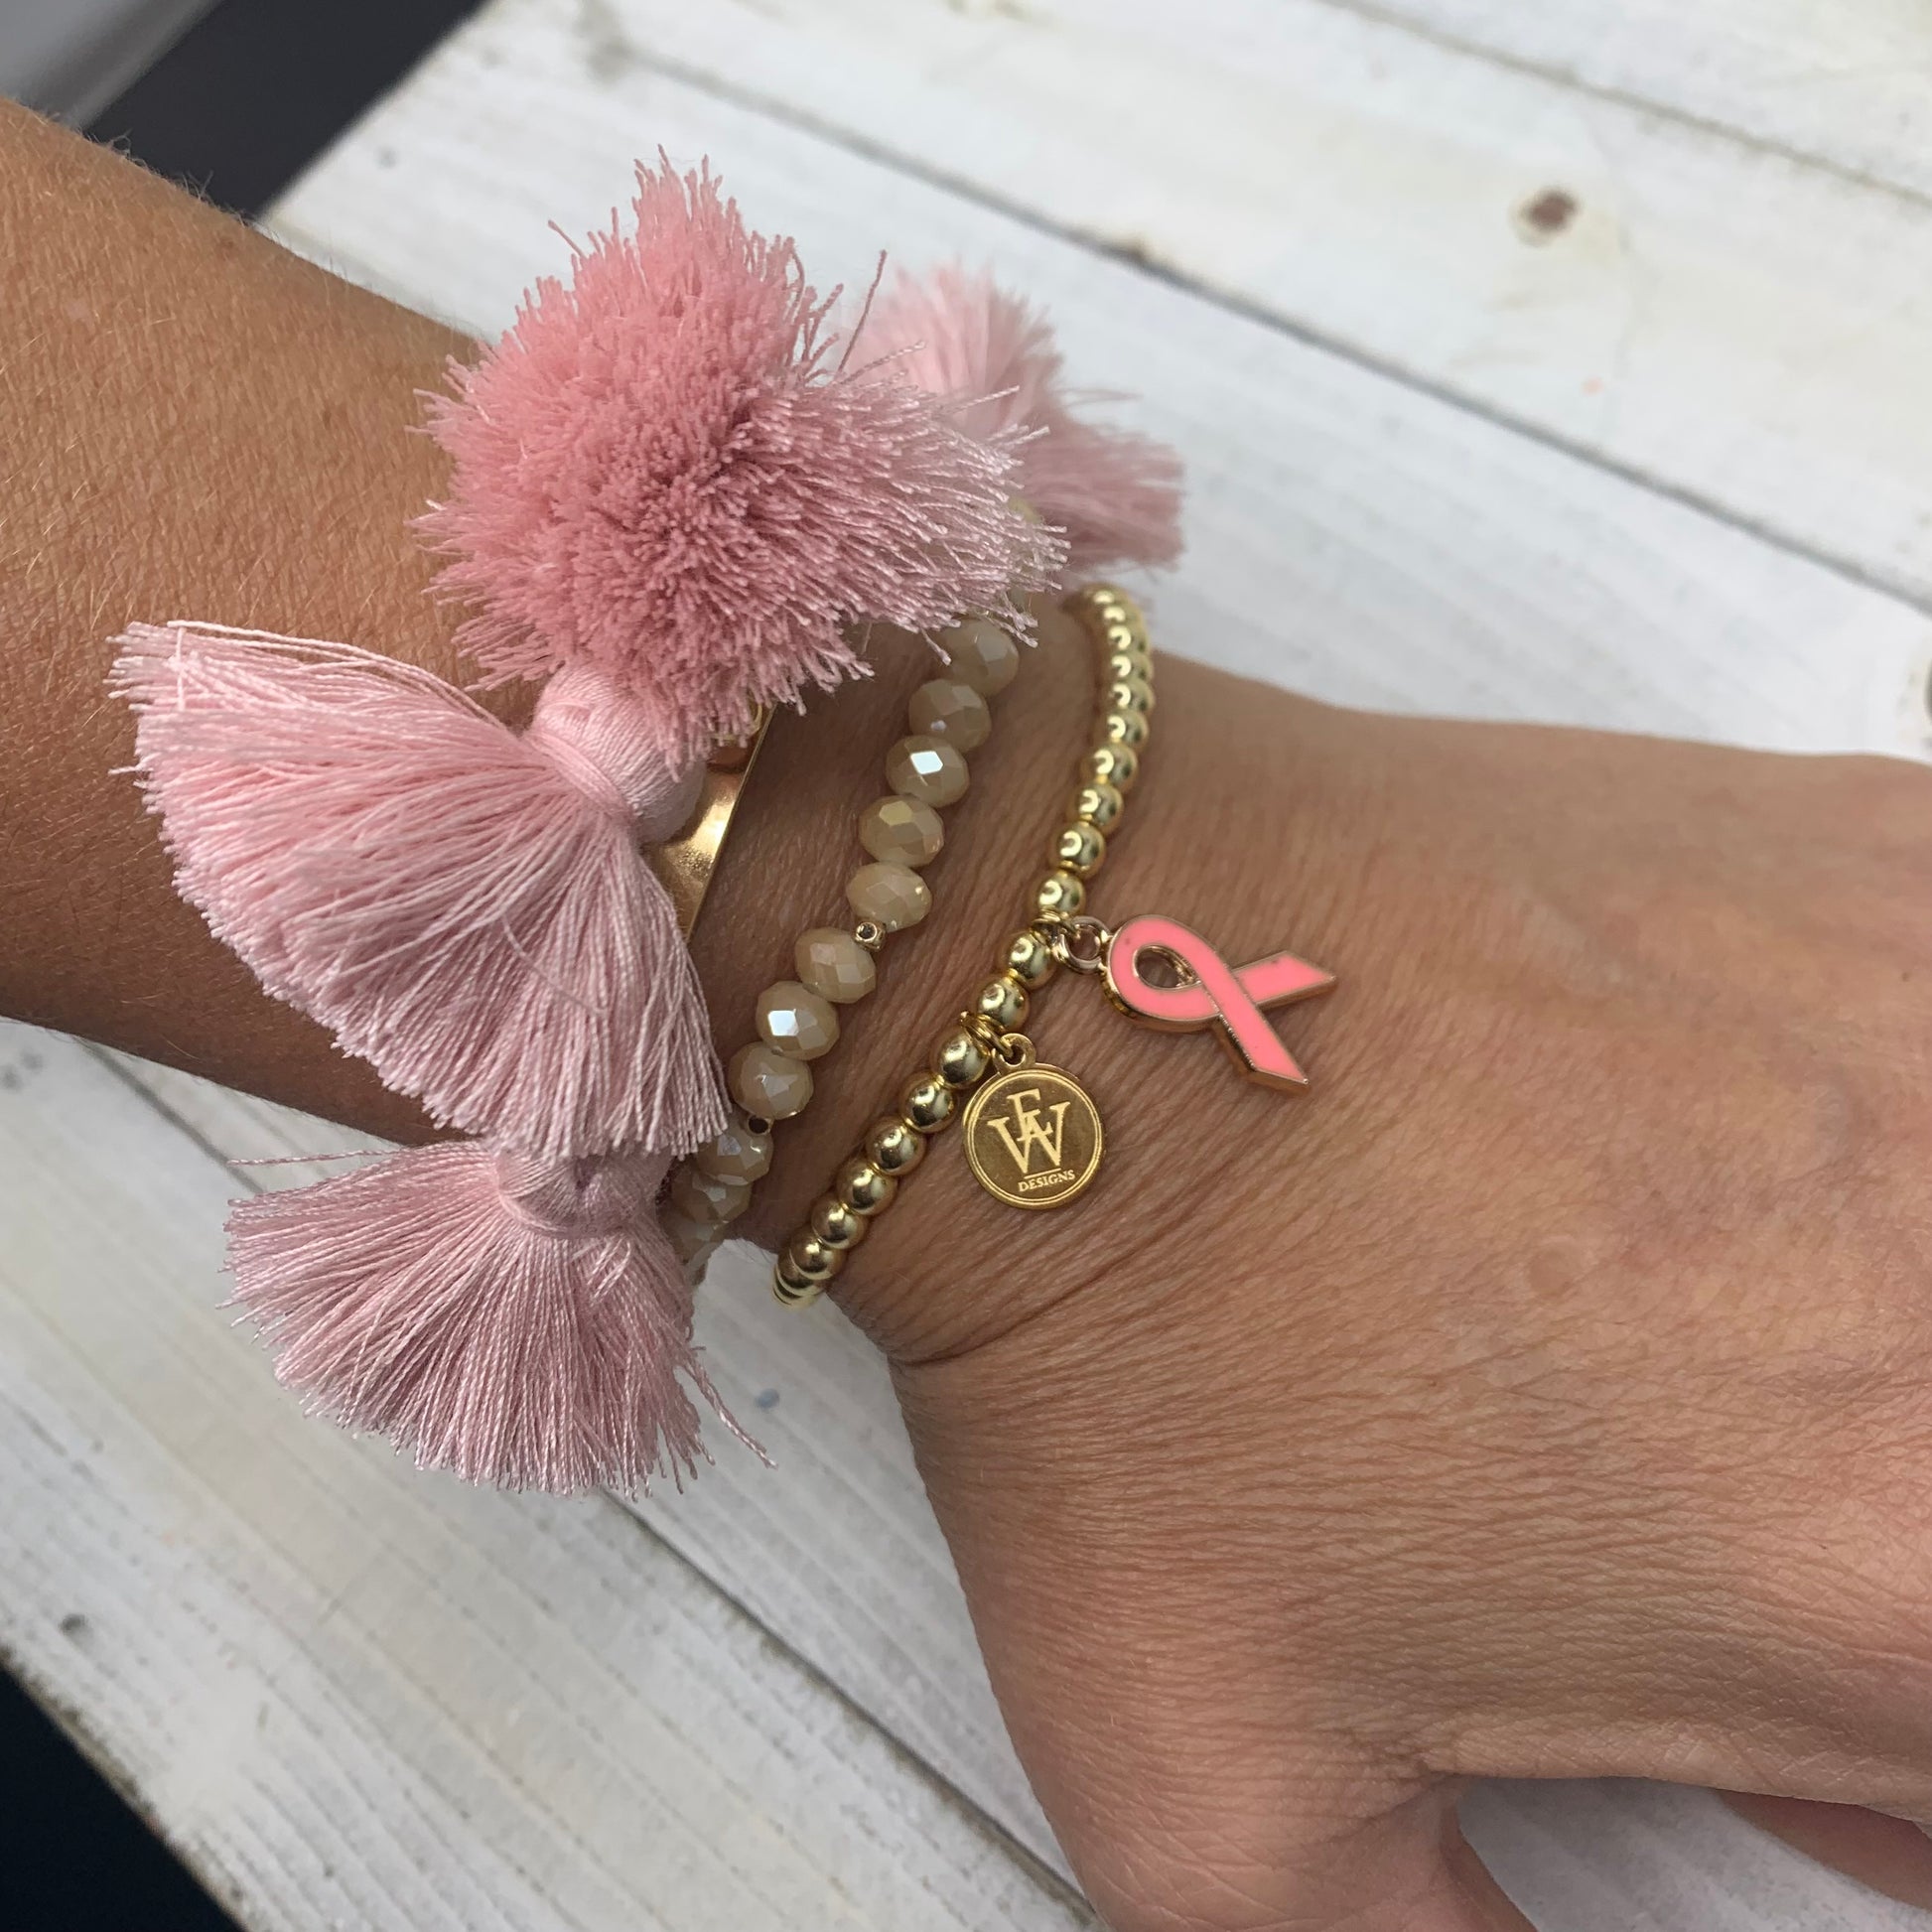 Pink ribbon breast cancer awareness bracelet